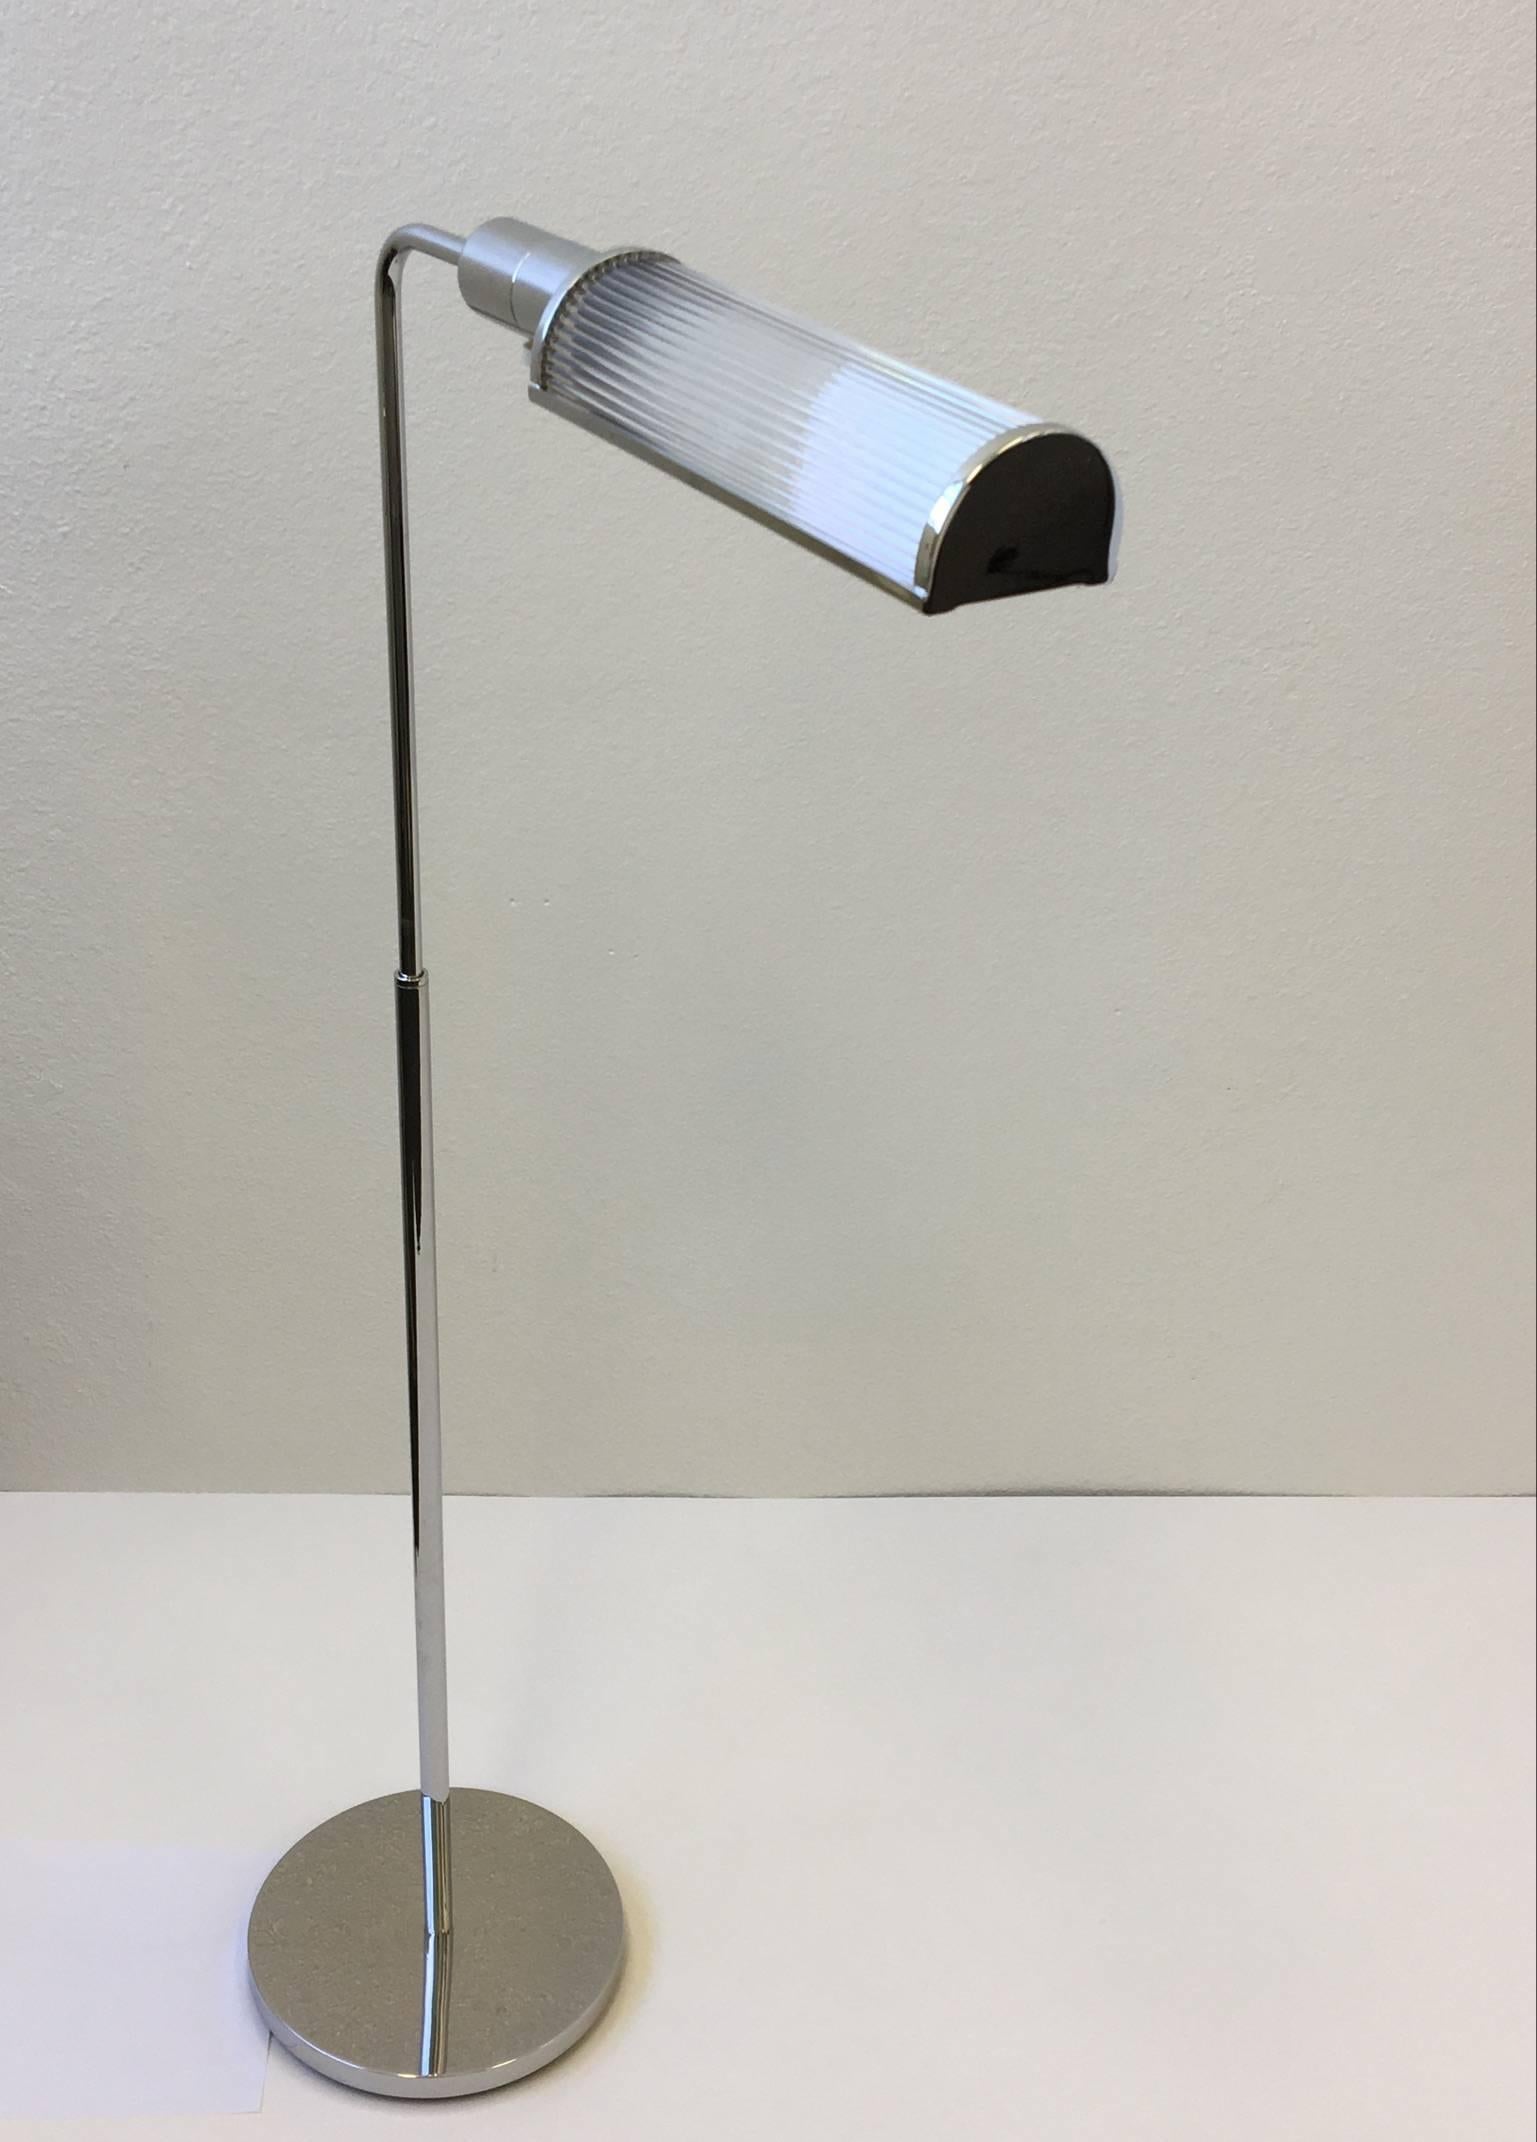 Ein Paar glamouröse verstellbare Stehlampen aus Chrom und Glas, entworfen von Casella in den 1970er Jahren. 
Die Lampen sind professionell restauriert worden.
Die Steckdose ist ein Dimmer mit Vollbereichssteuerung.
Sie können die Lampe um 360*